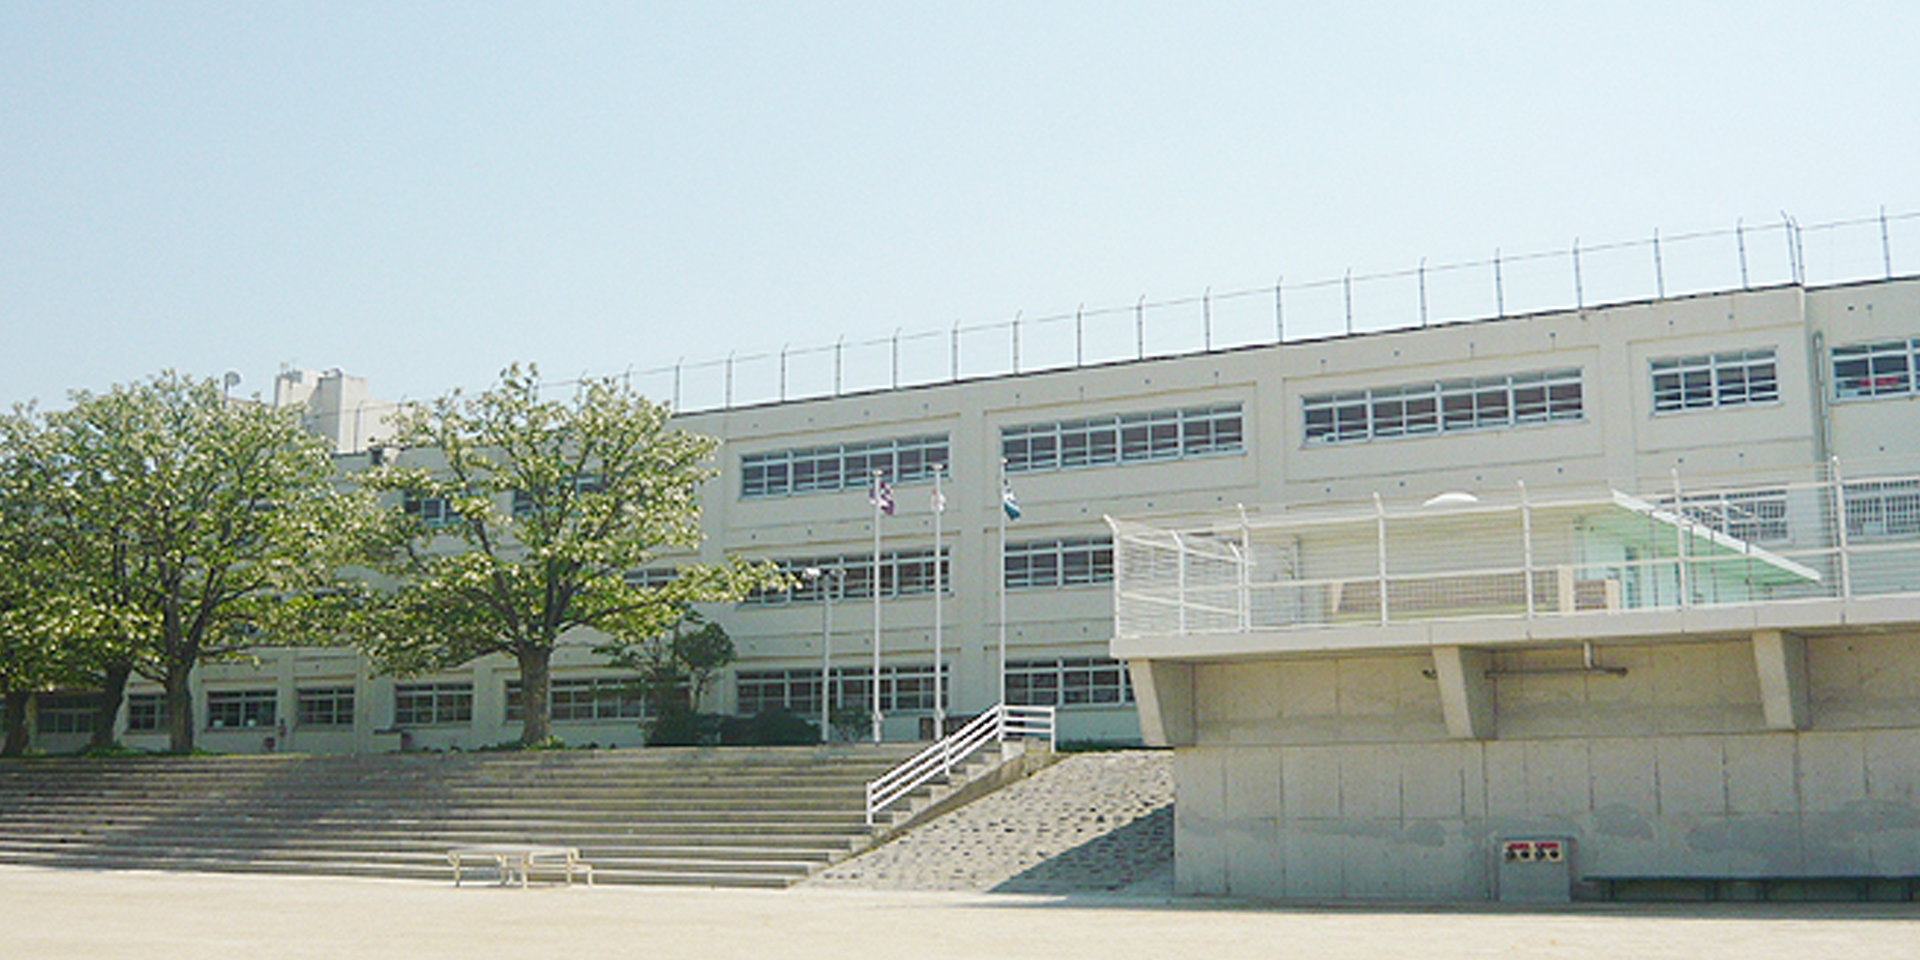 菰田小学校